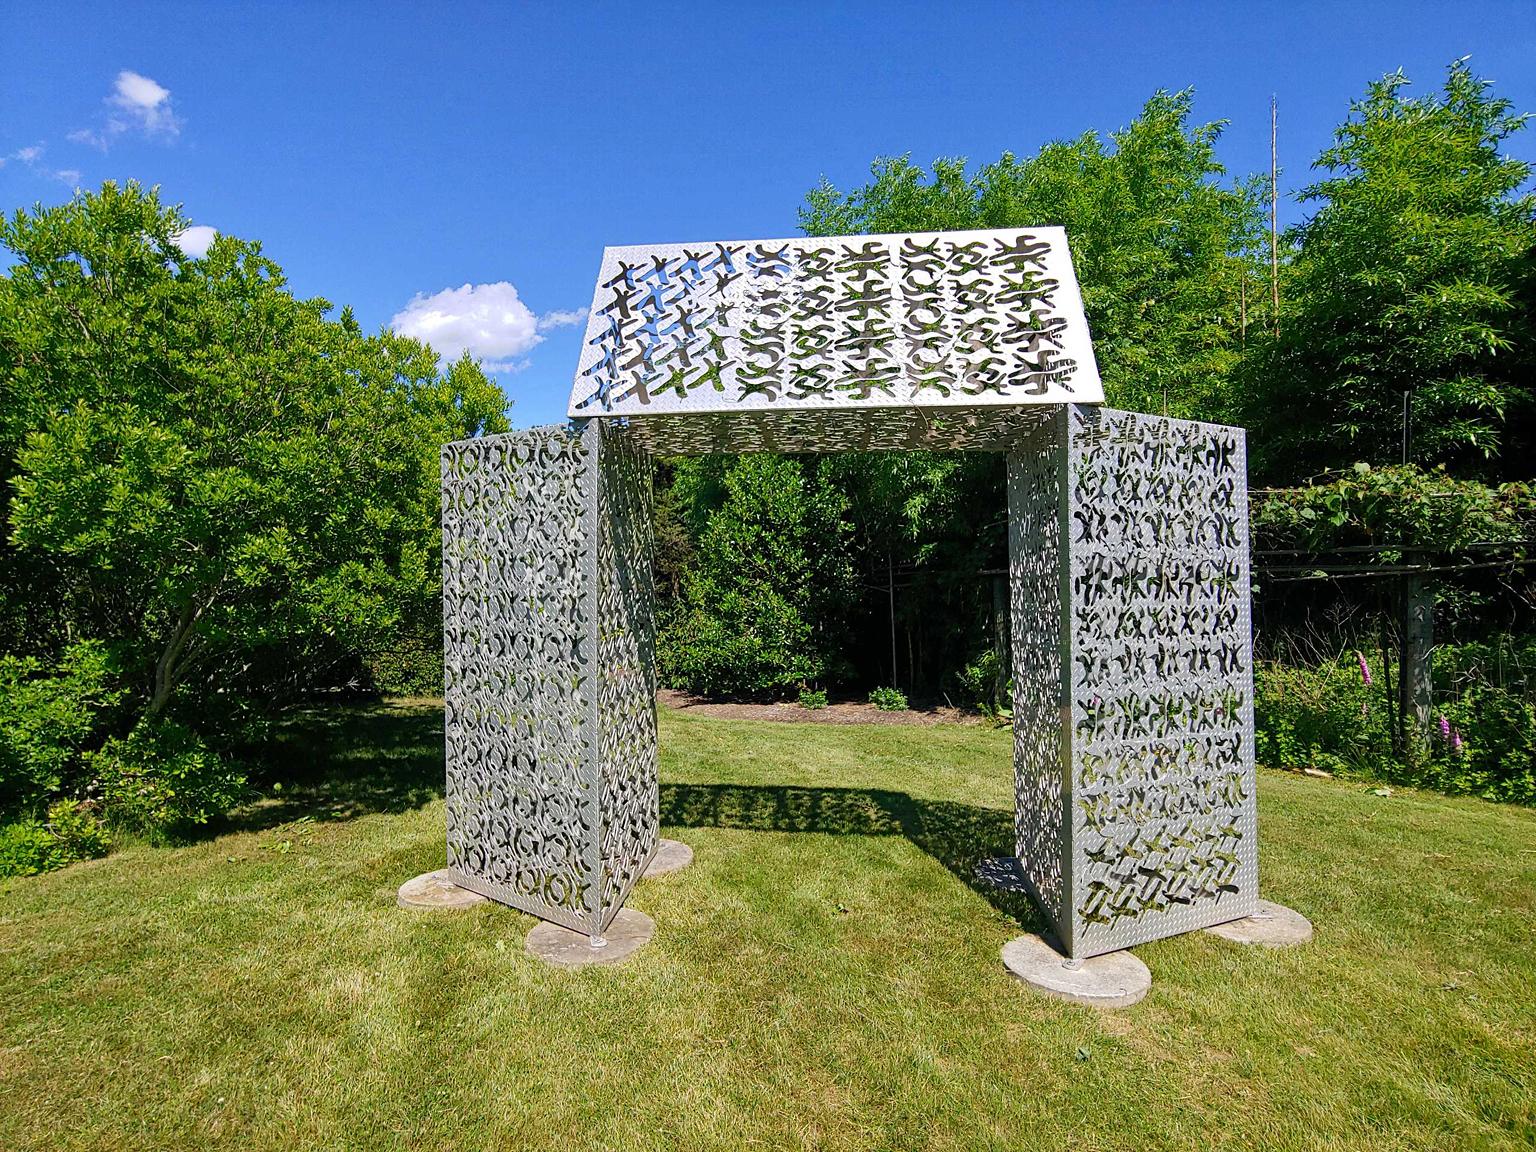 outdoor metal sculptures